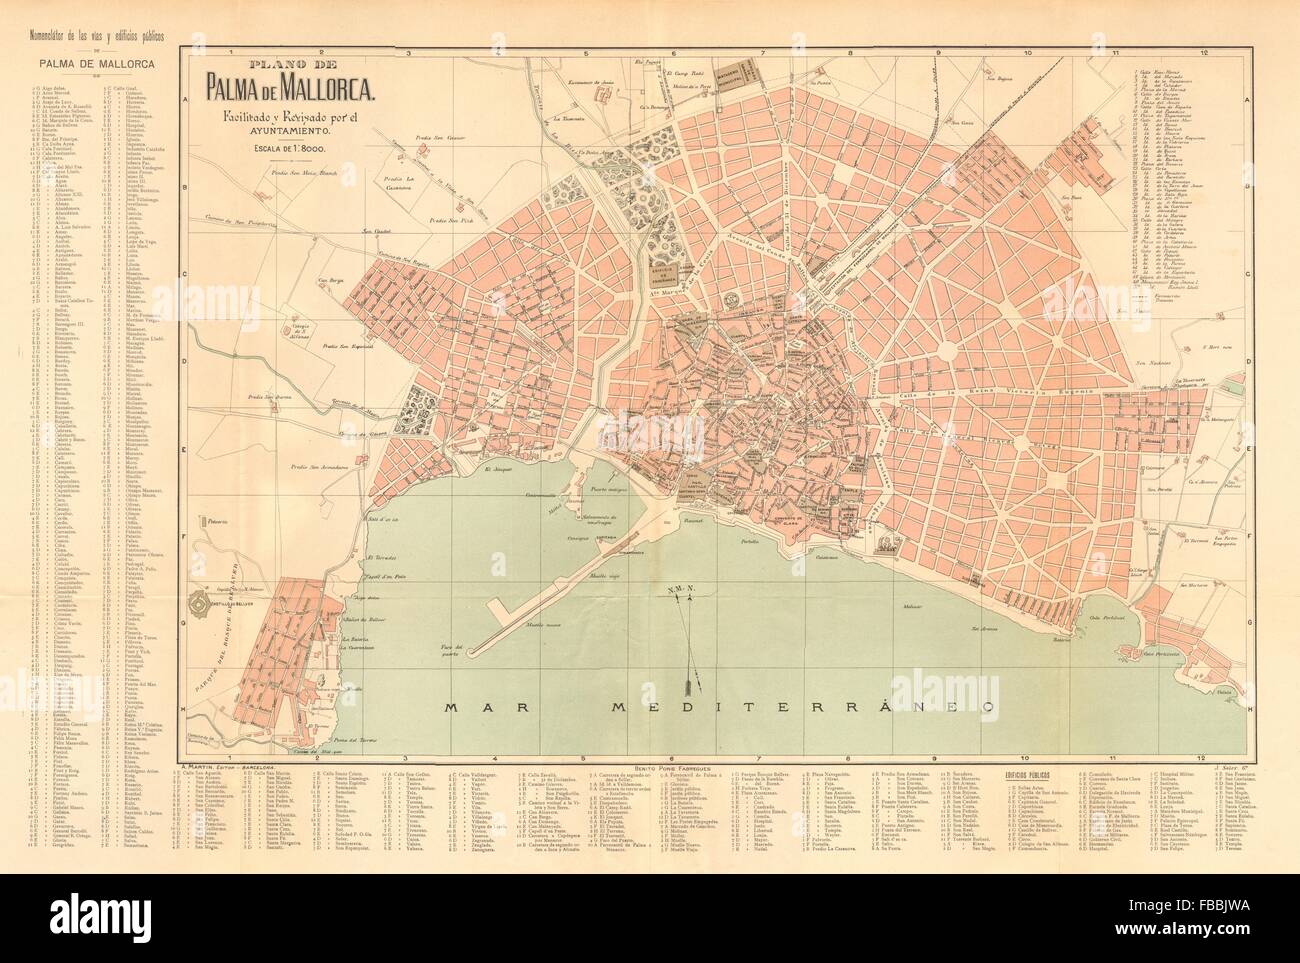 PALMA DE MALLORCA. Plano antiguo cuidad Antique town/city plan. MARTIN c1911 map Stock Photo